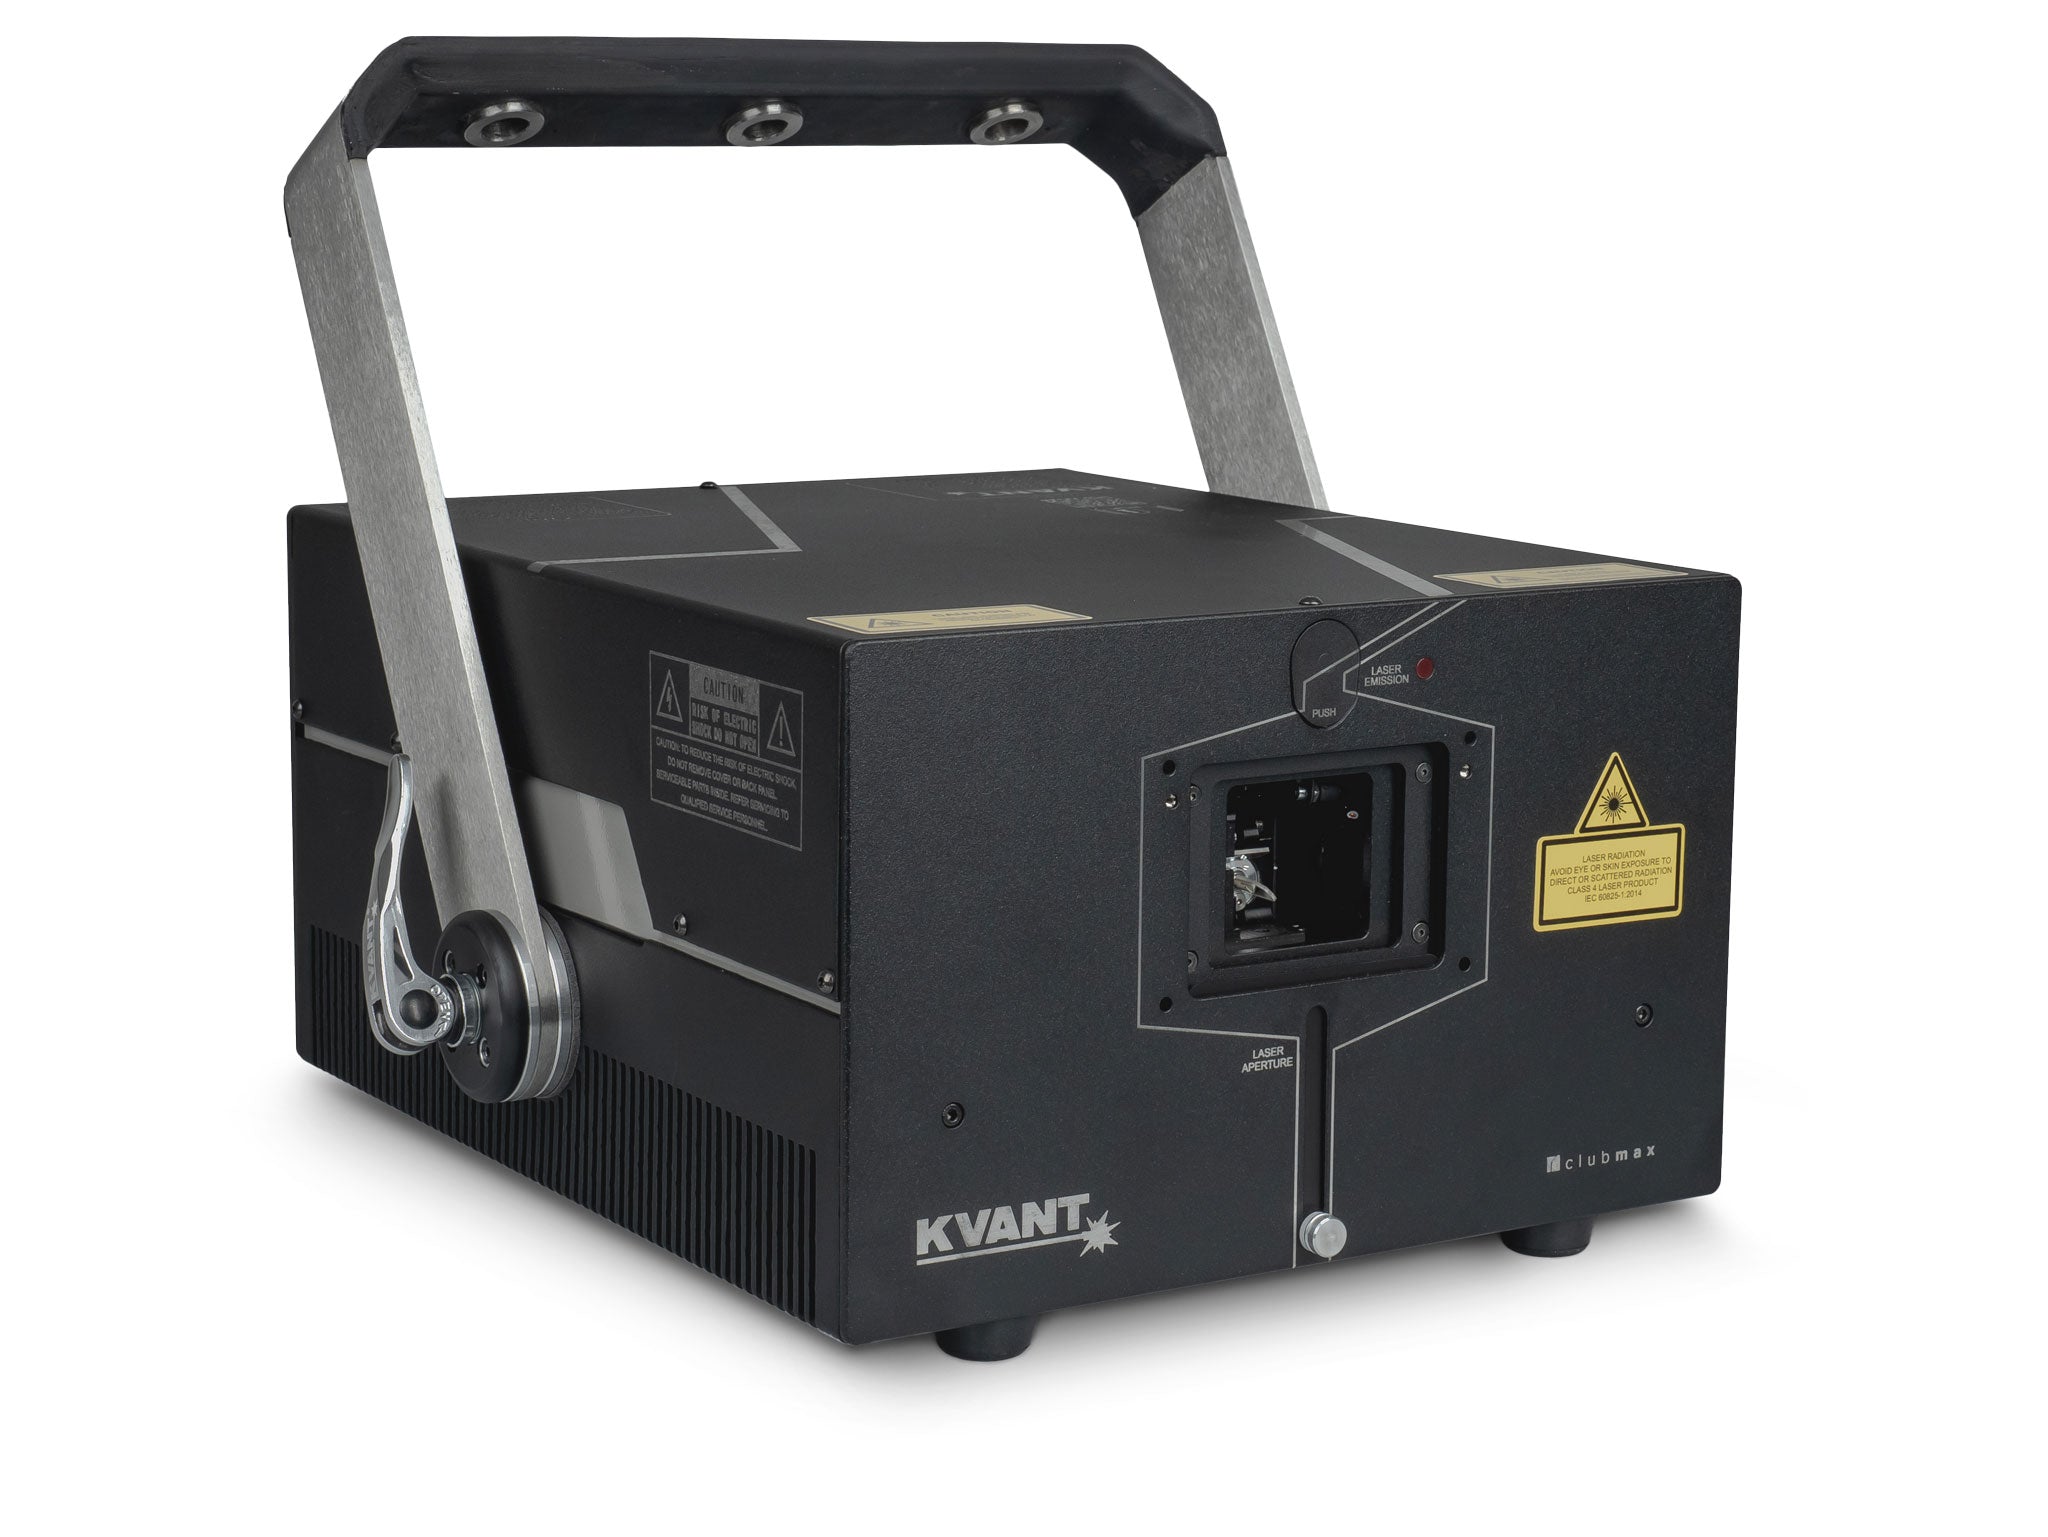 Télémètre laser PR-Max ⎮ Dekoxer